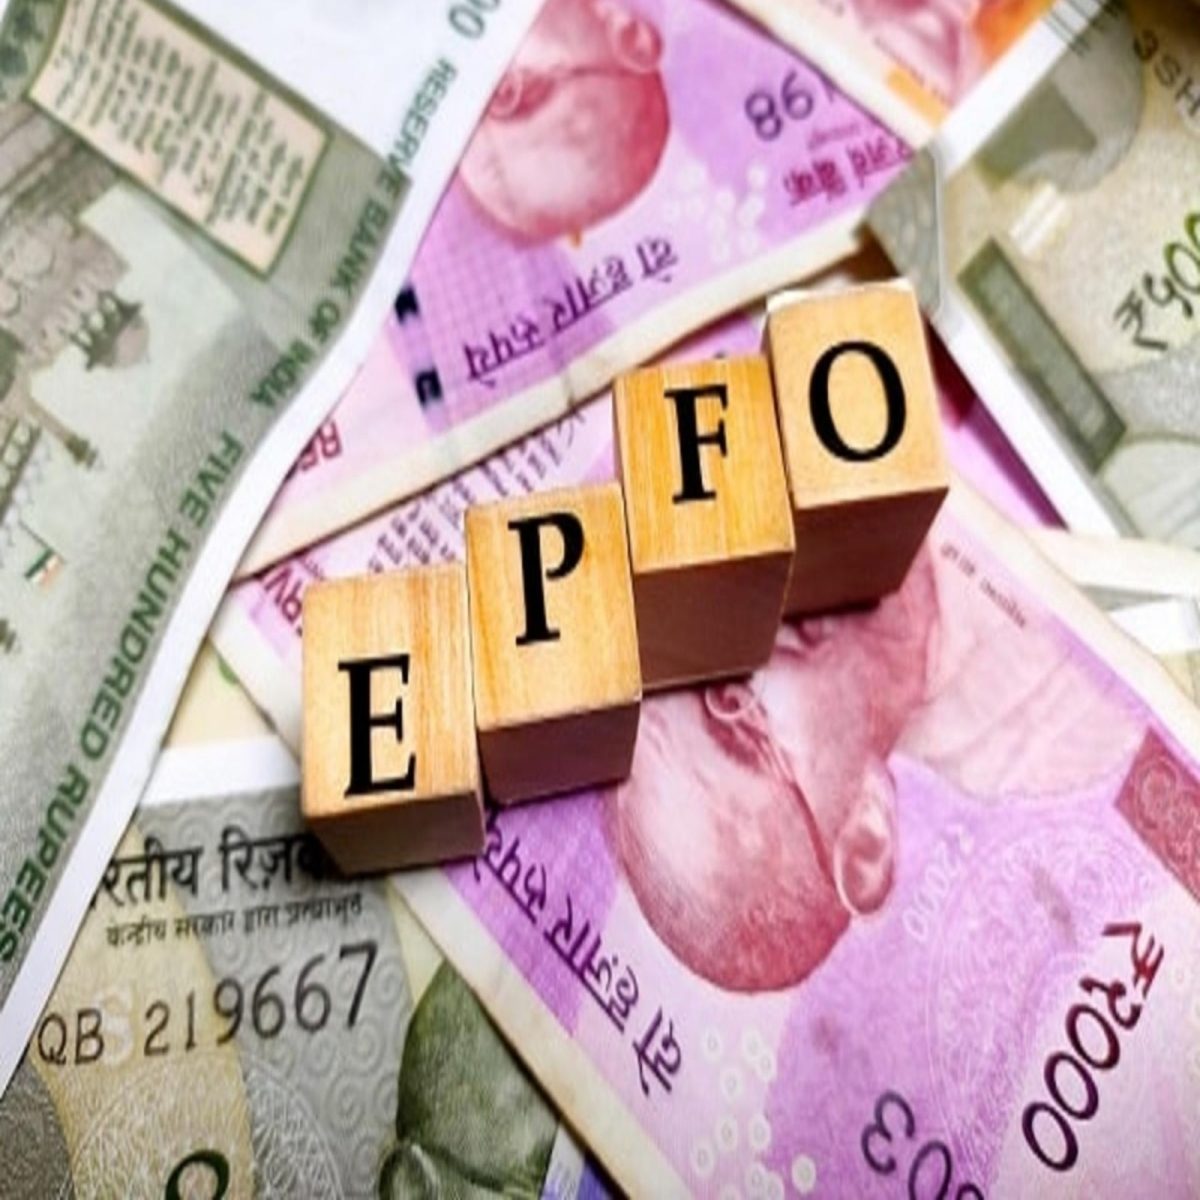 EPFO : कर्मचारियों के लिए अच्छी खबर, सेवानिवृत्ति के दिन ही मिला पेंशन पेमेंट ऑर्डर, राशि का भुगतान